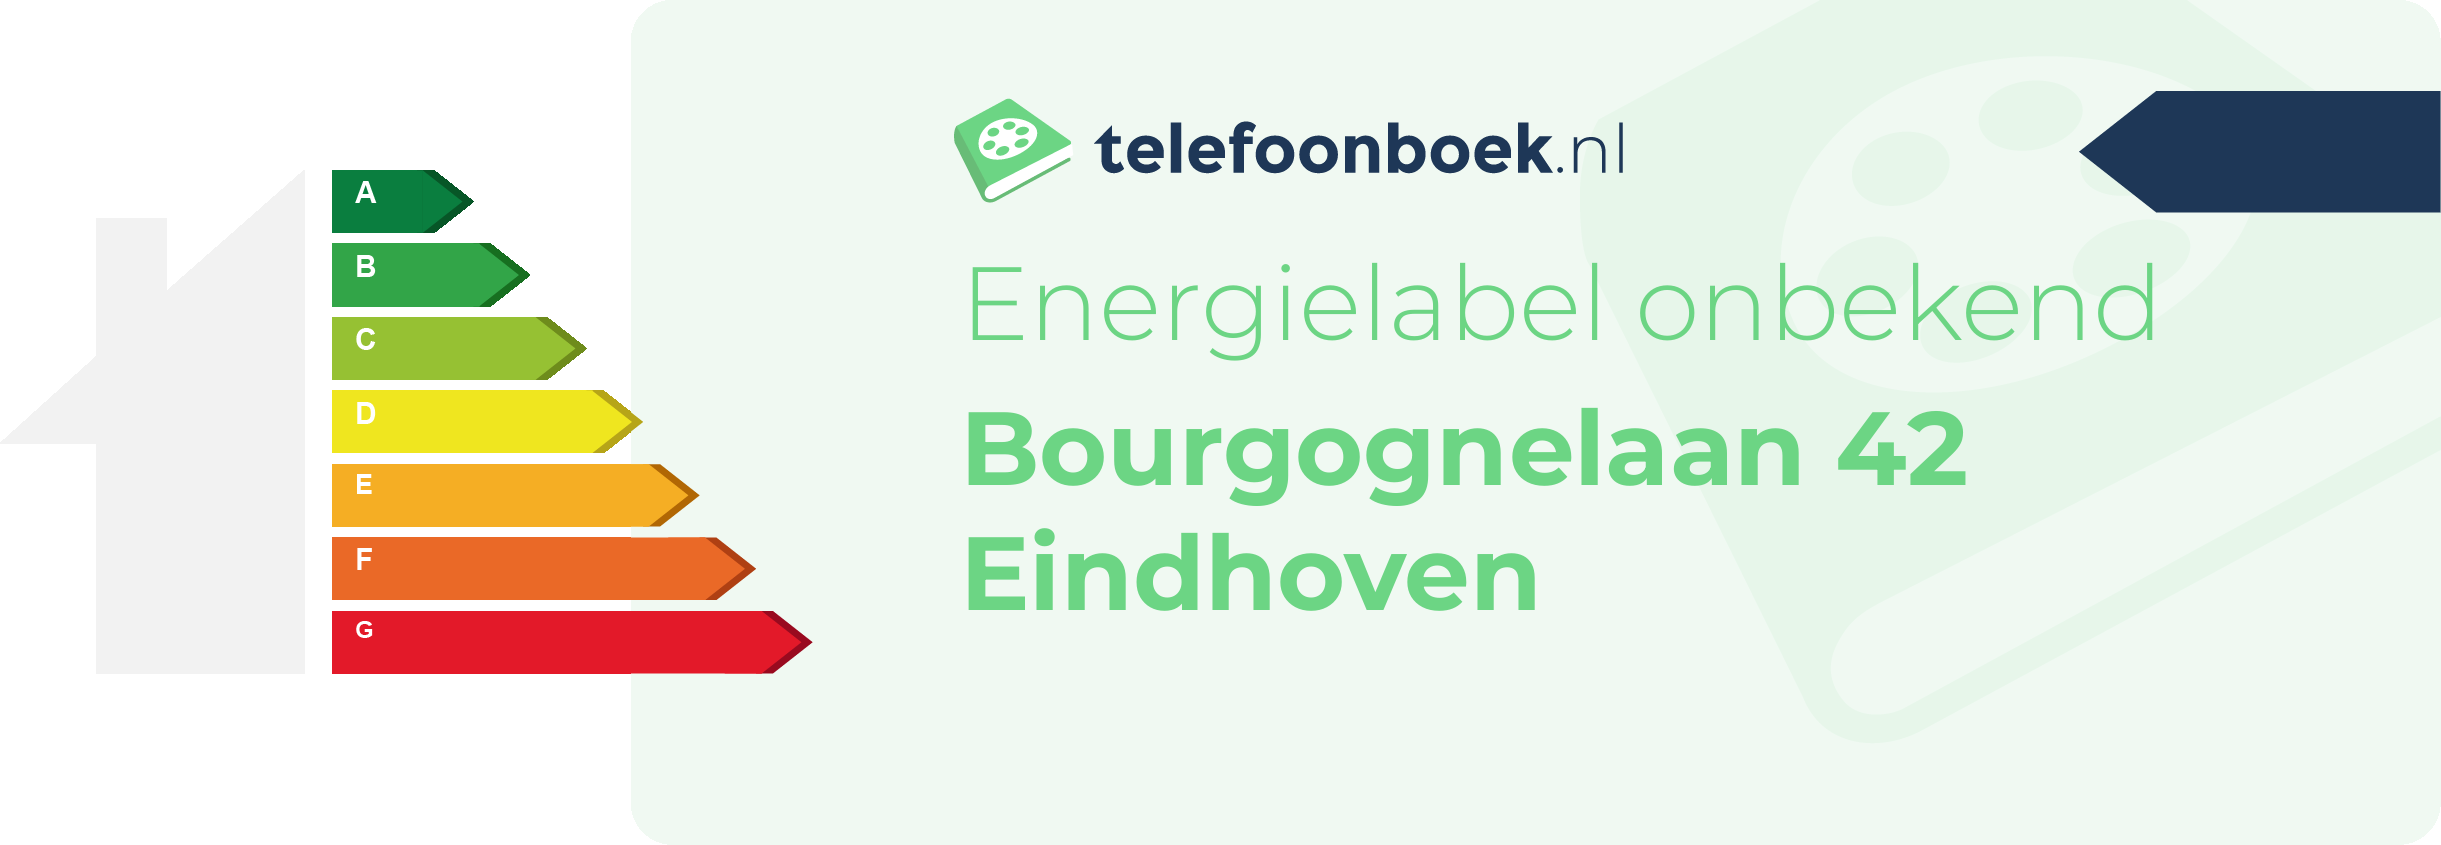 Energielabel Bourgognelaan 42 Eindhoven